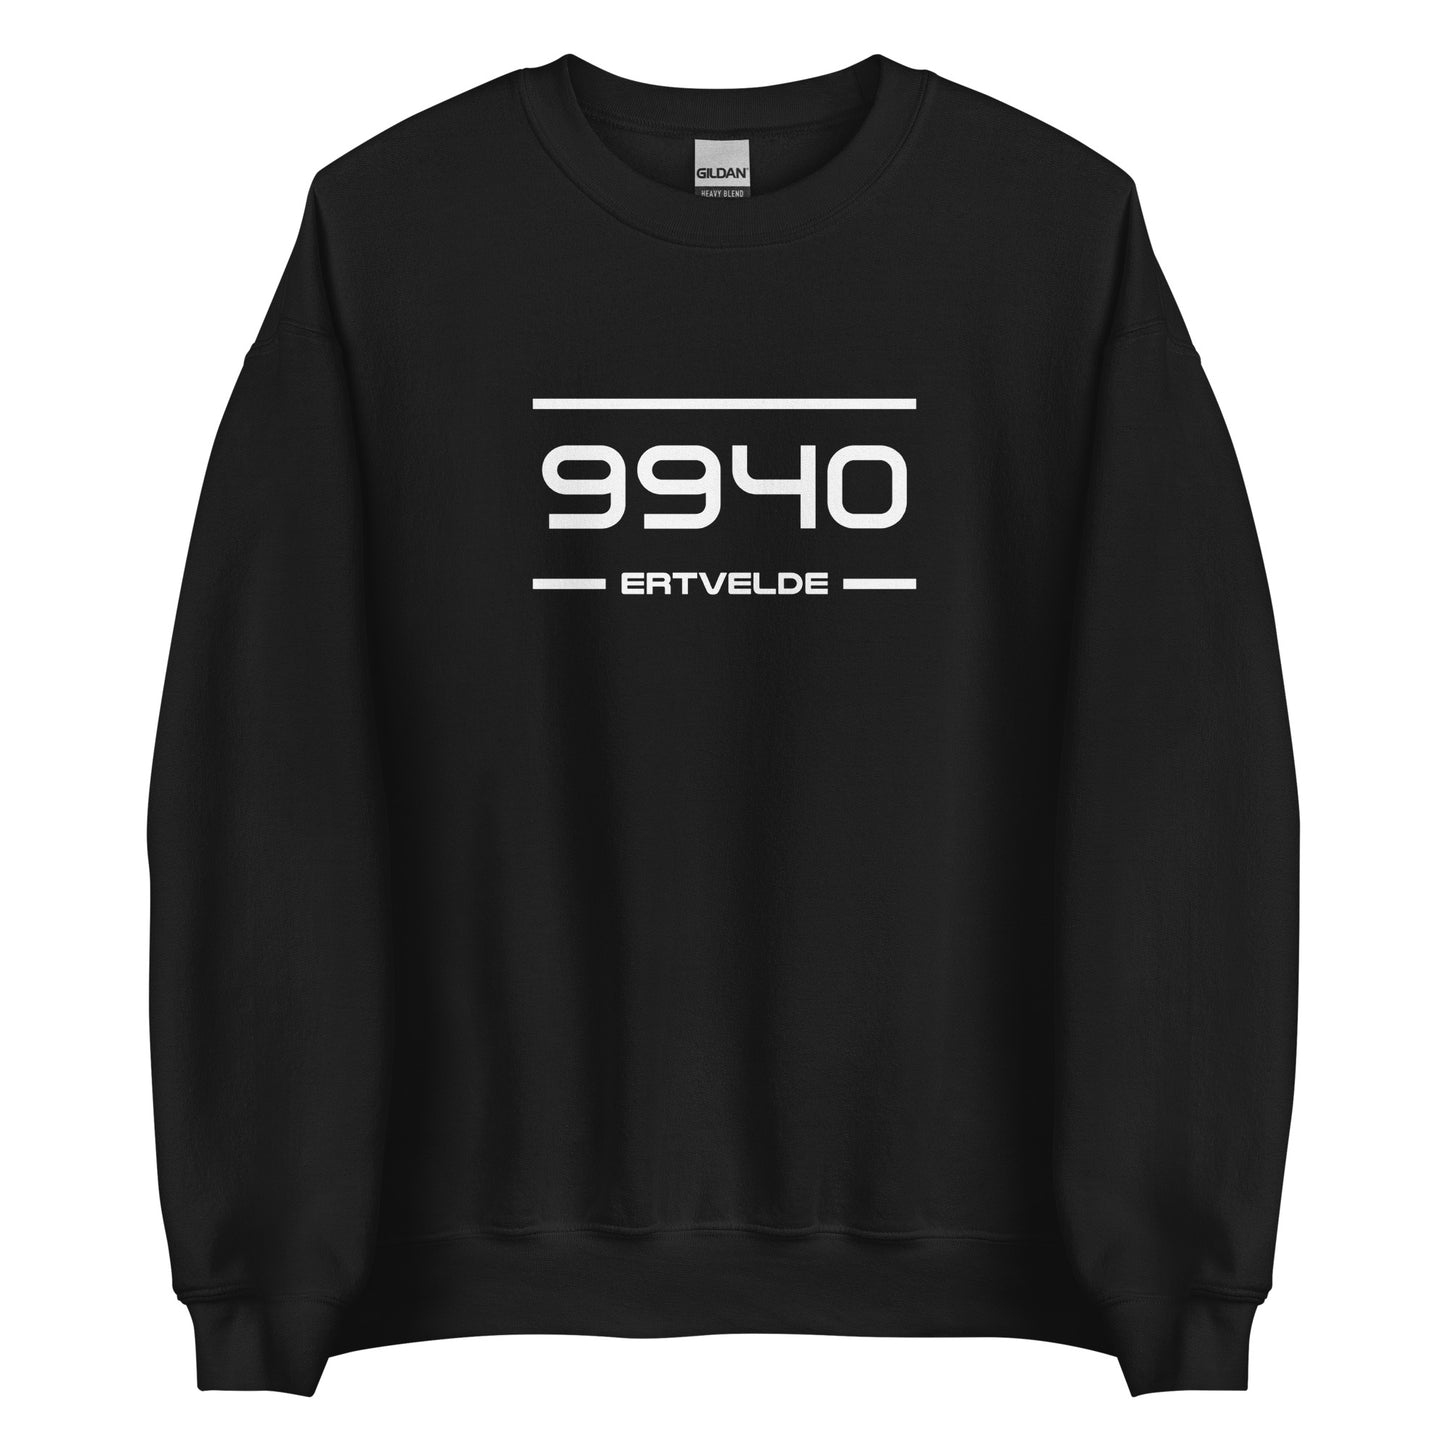 Sweater - 9940 - Ertvelde (M/V)